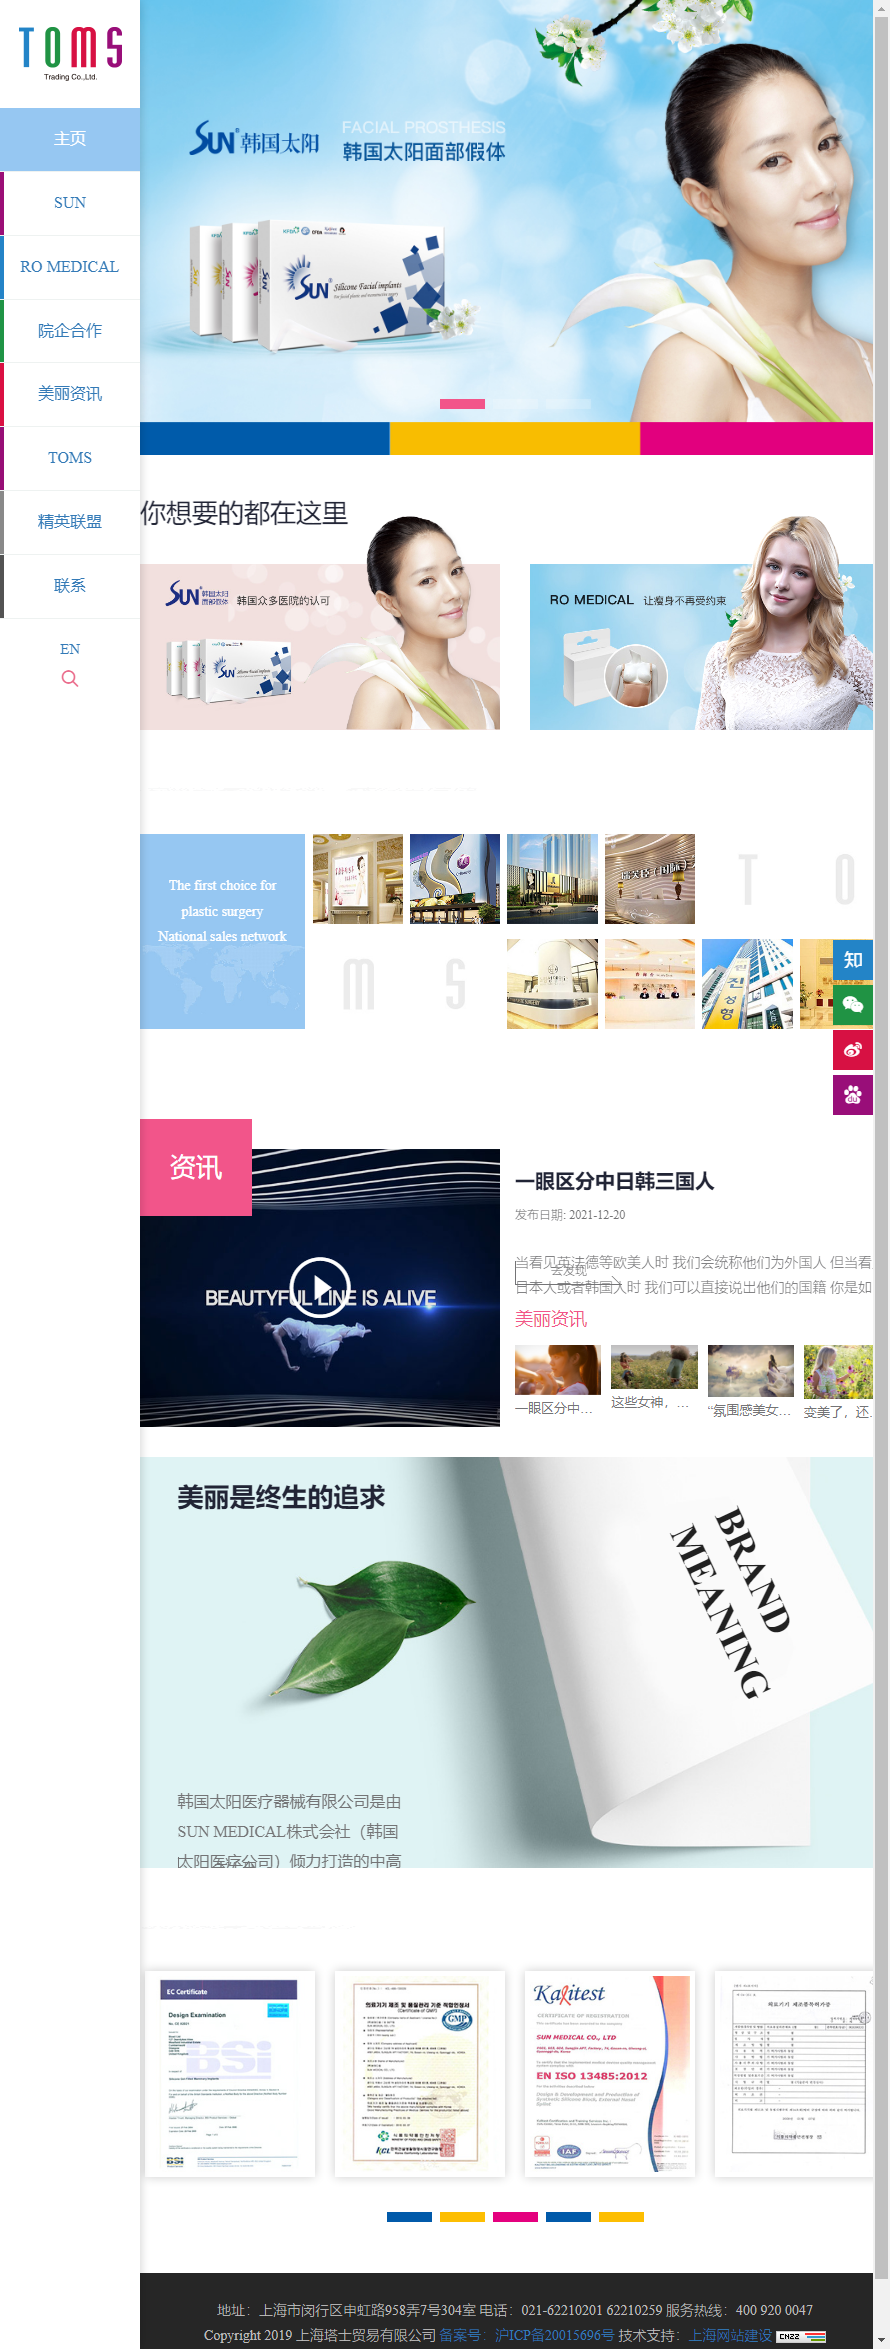 上海塔士贸易有限公司网站案例